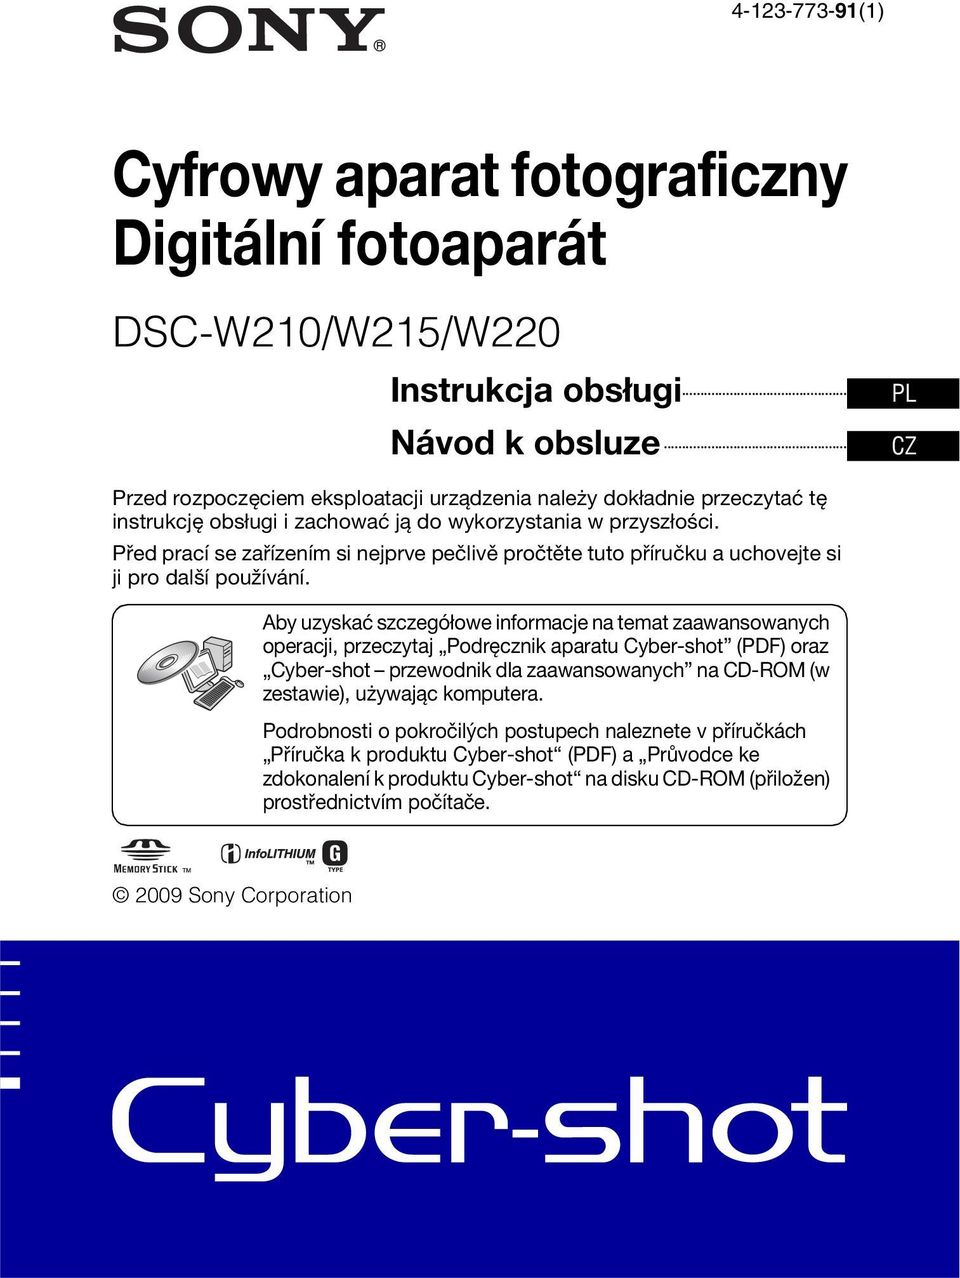 Aby uzyskać szczegółowe informacje na temat zaawansowanych operacji, przeczytaj Podręcznik aparatu Cyber-shot (PDF) oraz Cyber-shot przewodnik dla zaawansowanych na CD-ROM (w zestawie), używając